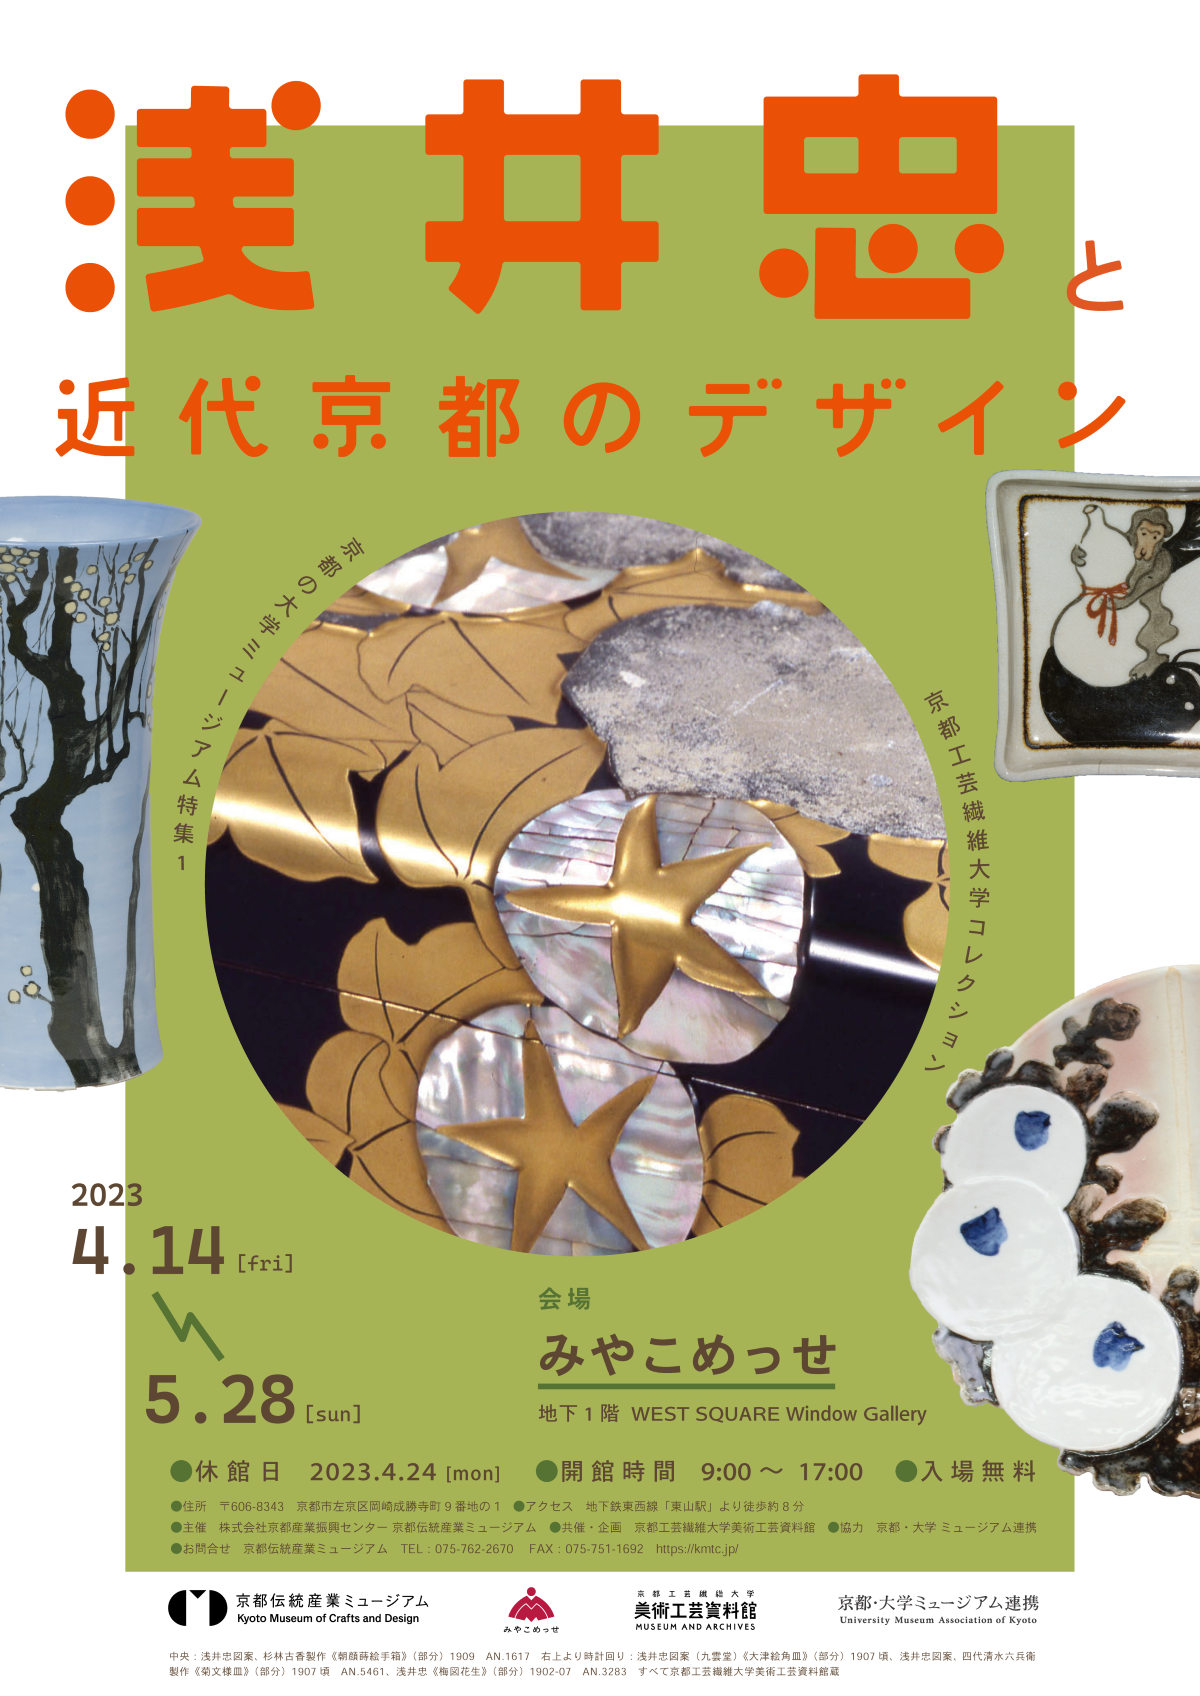 近代京都の伝統産業界に大きな影響を与えた 浅井忠 と京都の美術工芸にまつわる展覧会「浅井忠と近代京都のデザイン」、4月14日からみやこめっせにて開催